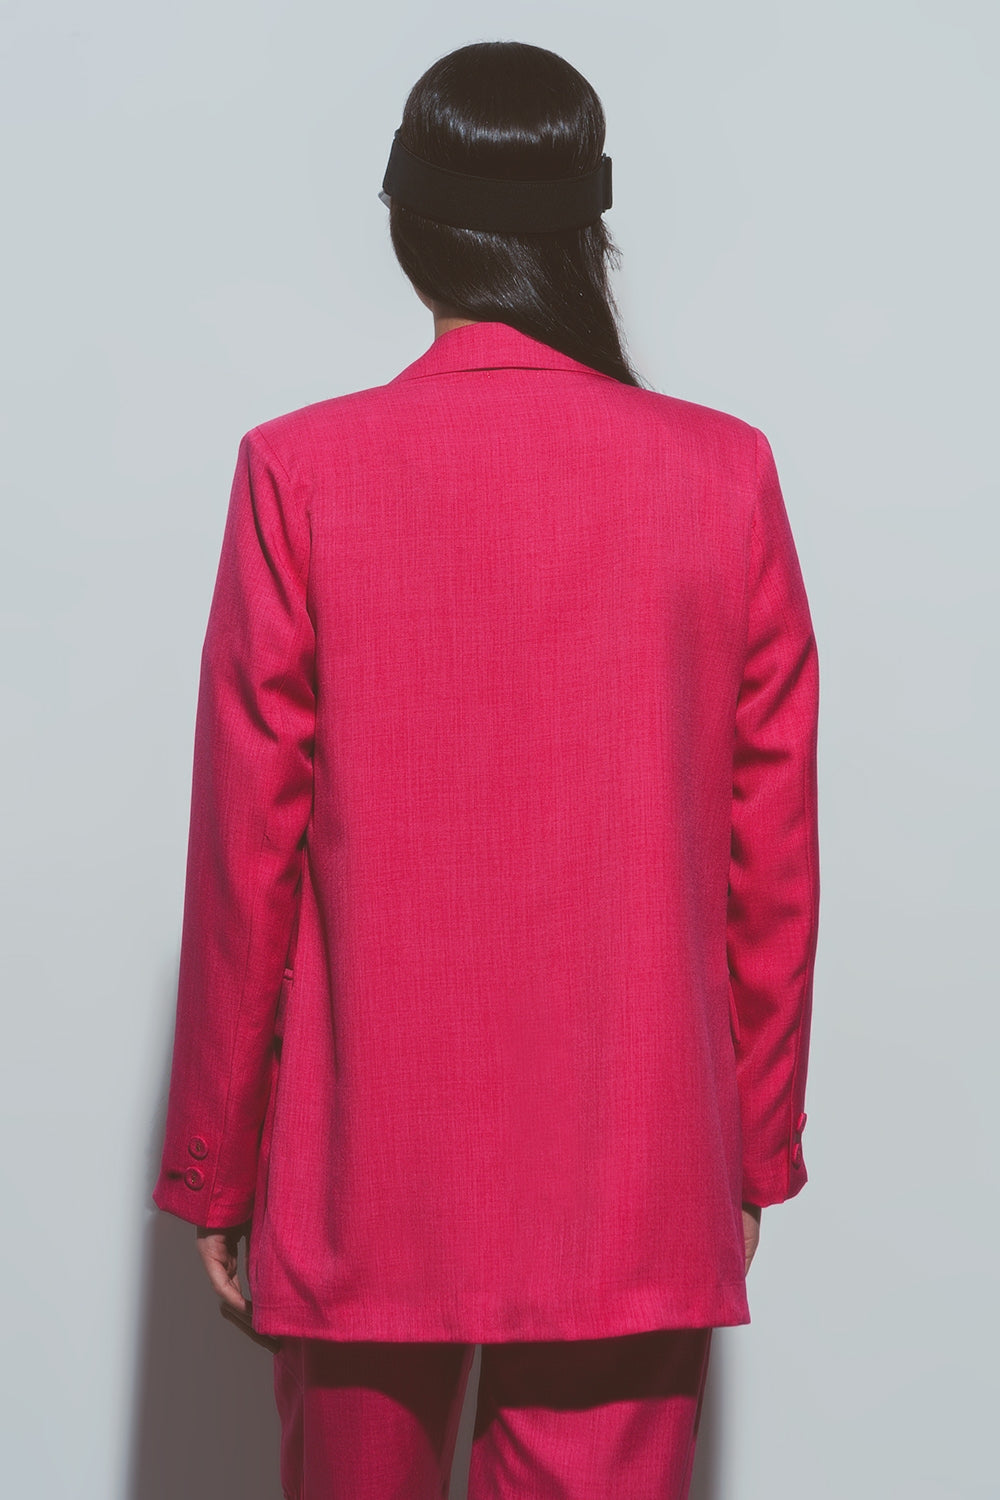 Veste rose texturée surdimensionnée